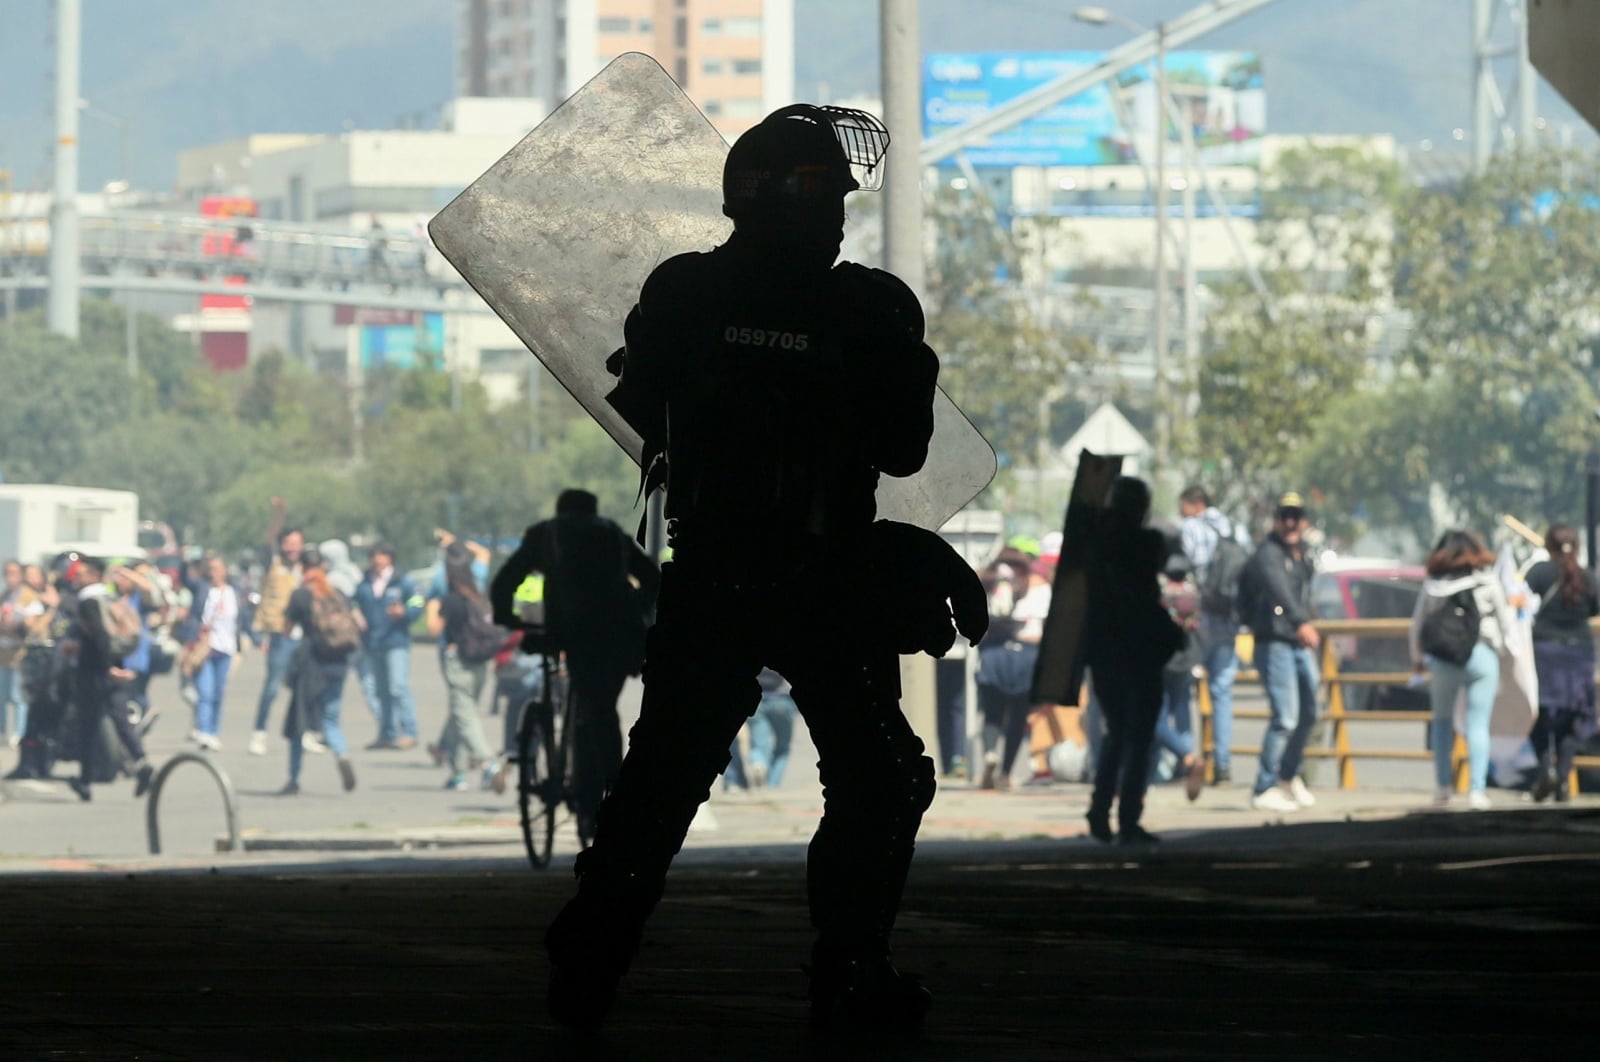 Grupa demonstrantów spotyka się z członkami policji podczas demonstracji w Bogocie, Kolumbia